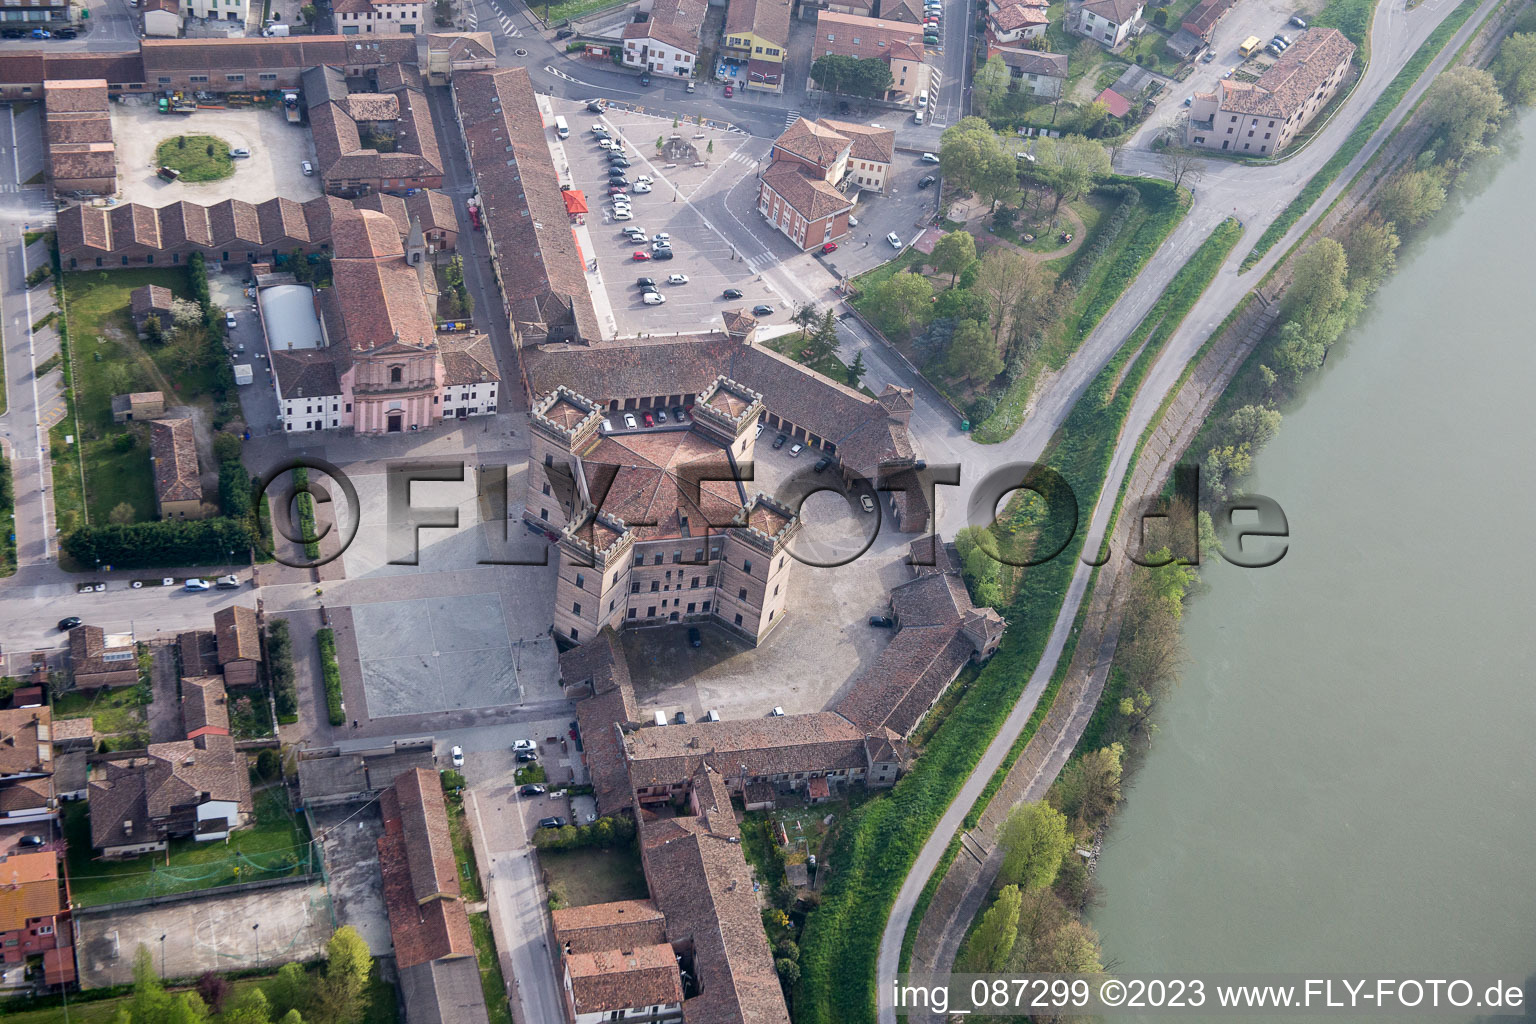 Mesola im Bundesland Emilia-Romagna, Italien von oben gesehen